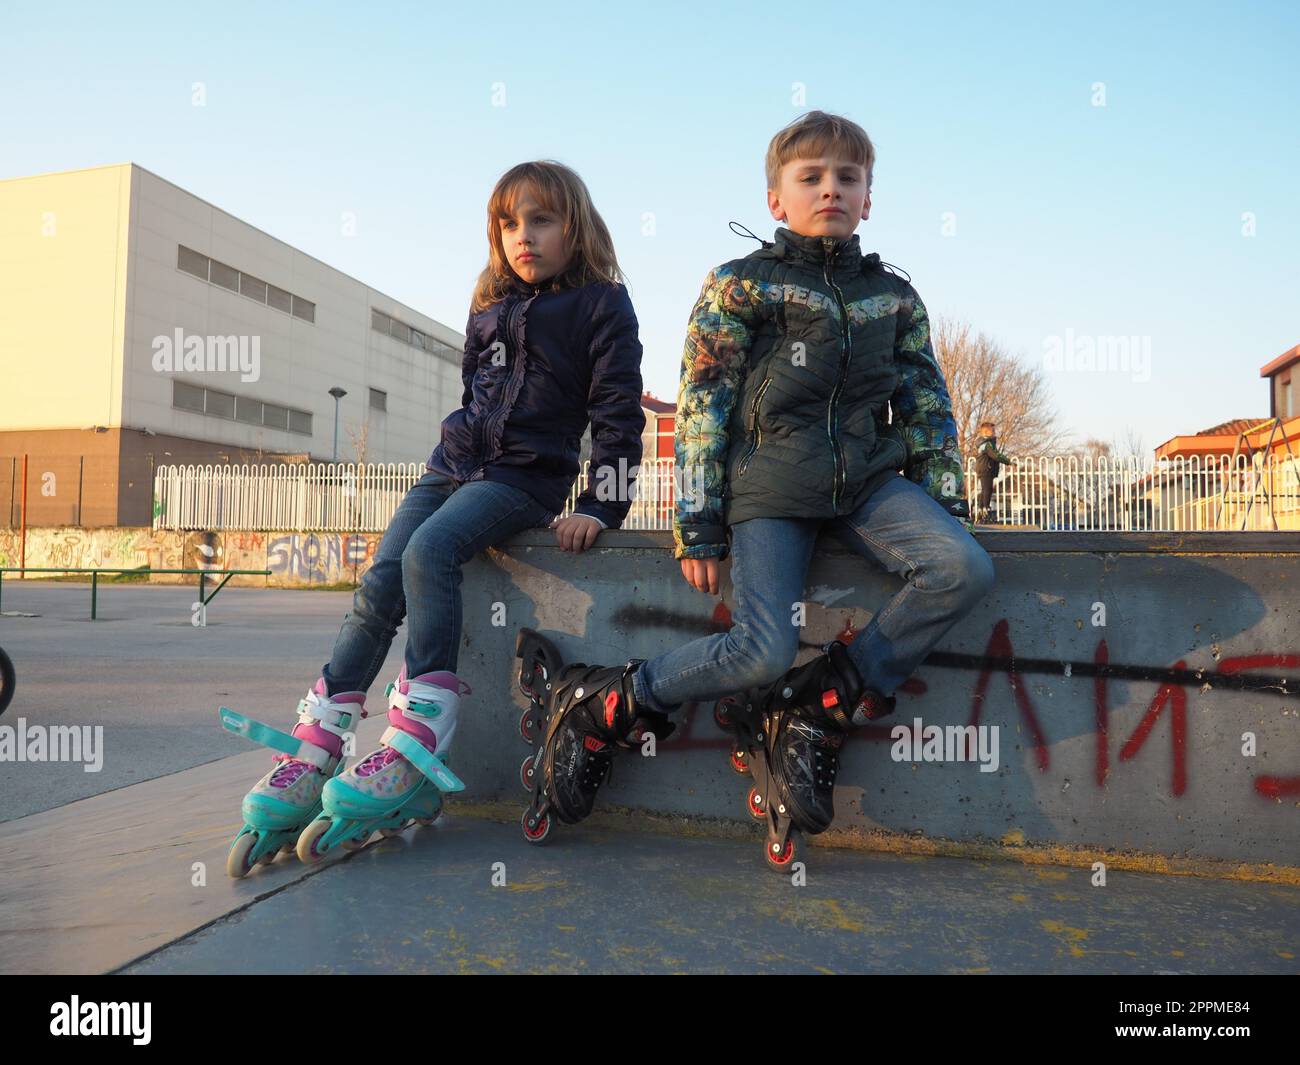 Sremska Mitrovica, Serbien, 7. März 2021. Junge und Mädchen auf Rollschuhen auf dem Sportplatz. Junge und Mädchen im Teenageralter ruhen sich nach dem Rollschuhlaufen aus. Kinder in Demi-Season-Klamotten. Stockfoto